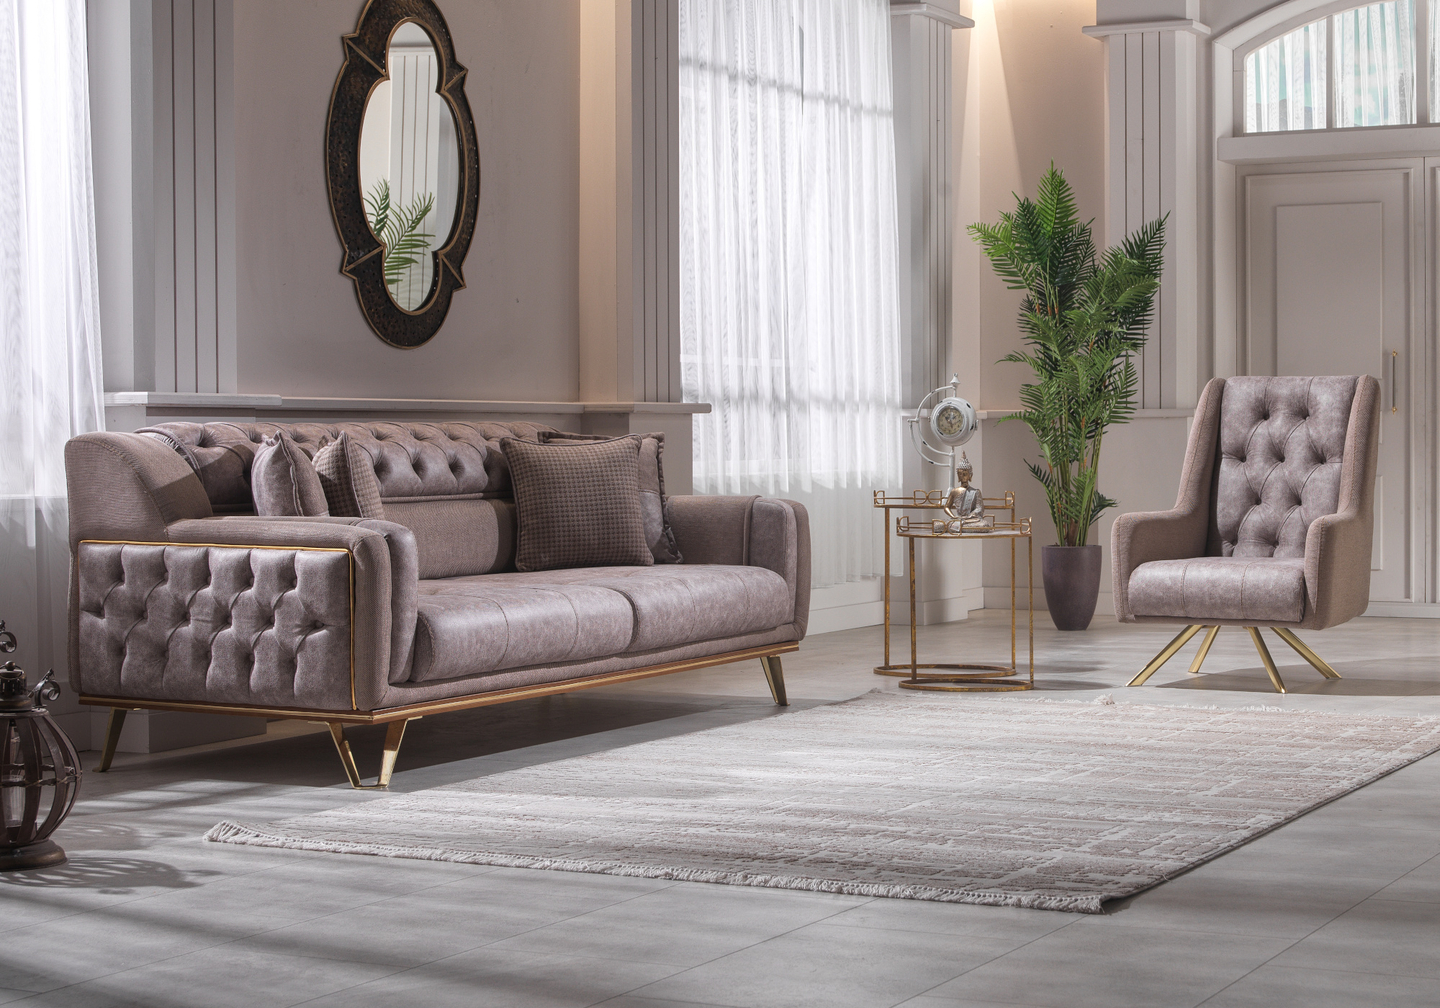 Découvrez l'univers des meubles turcs et leur raffinement unique - Meubles  turcs - decomeuble.fr